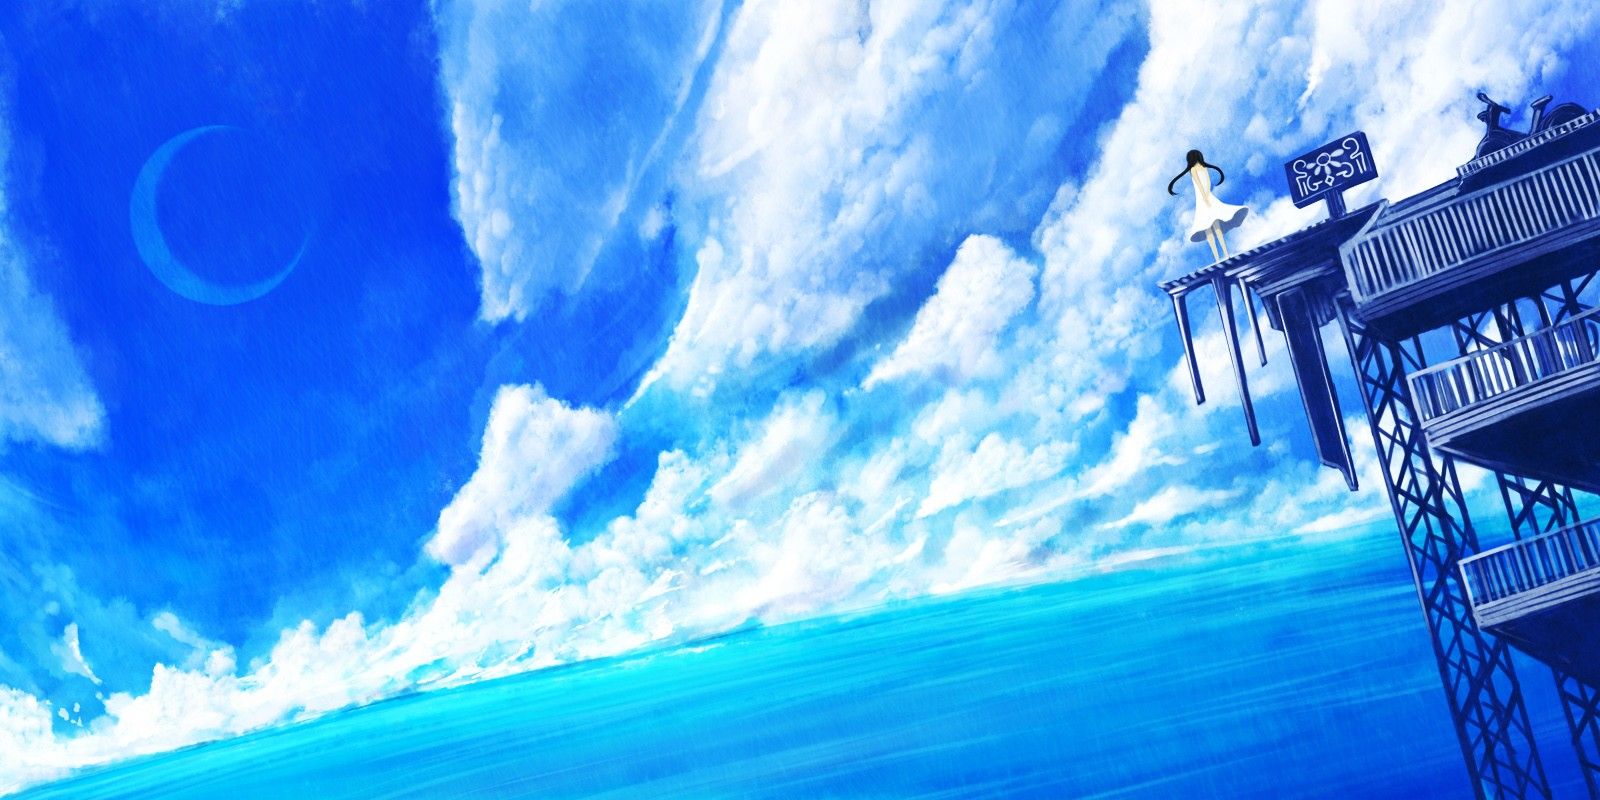 Blue Anime Wallpaper